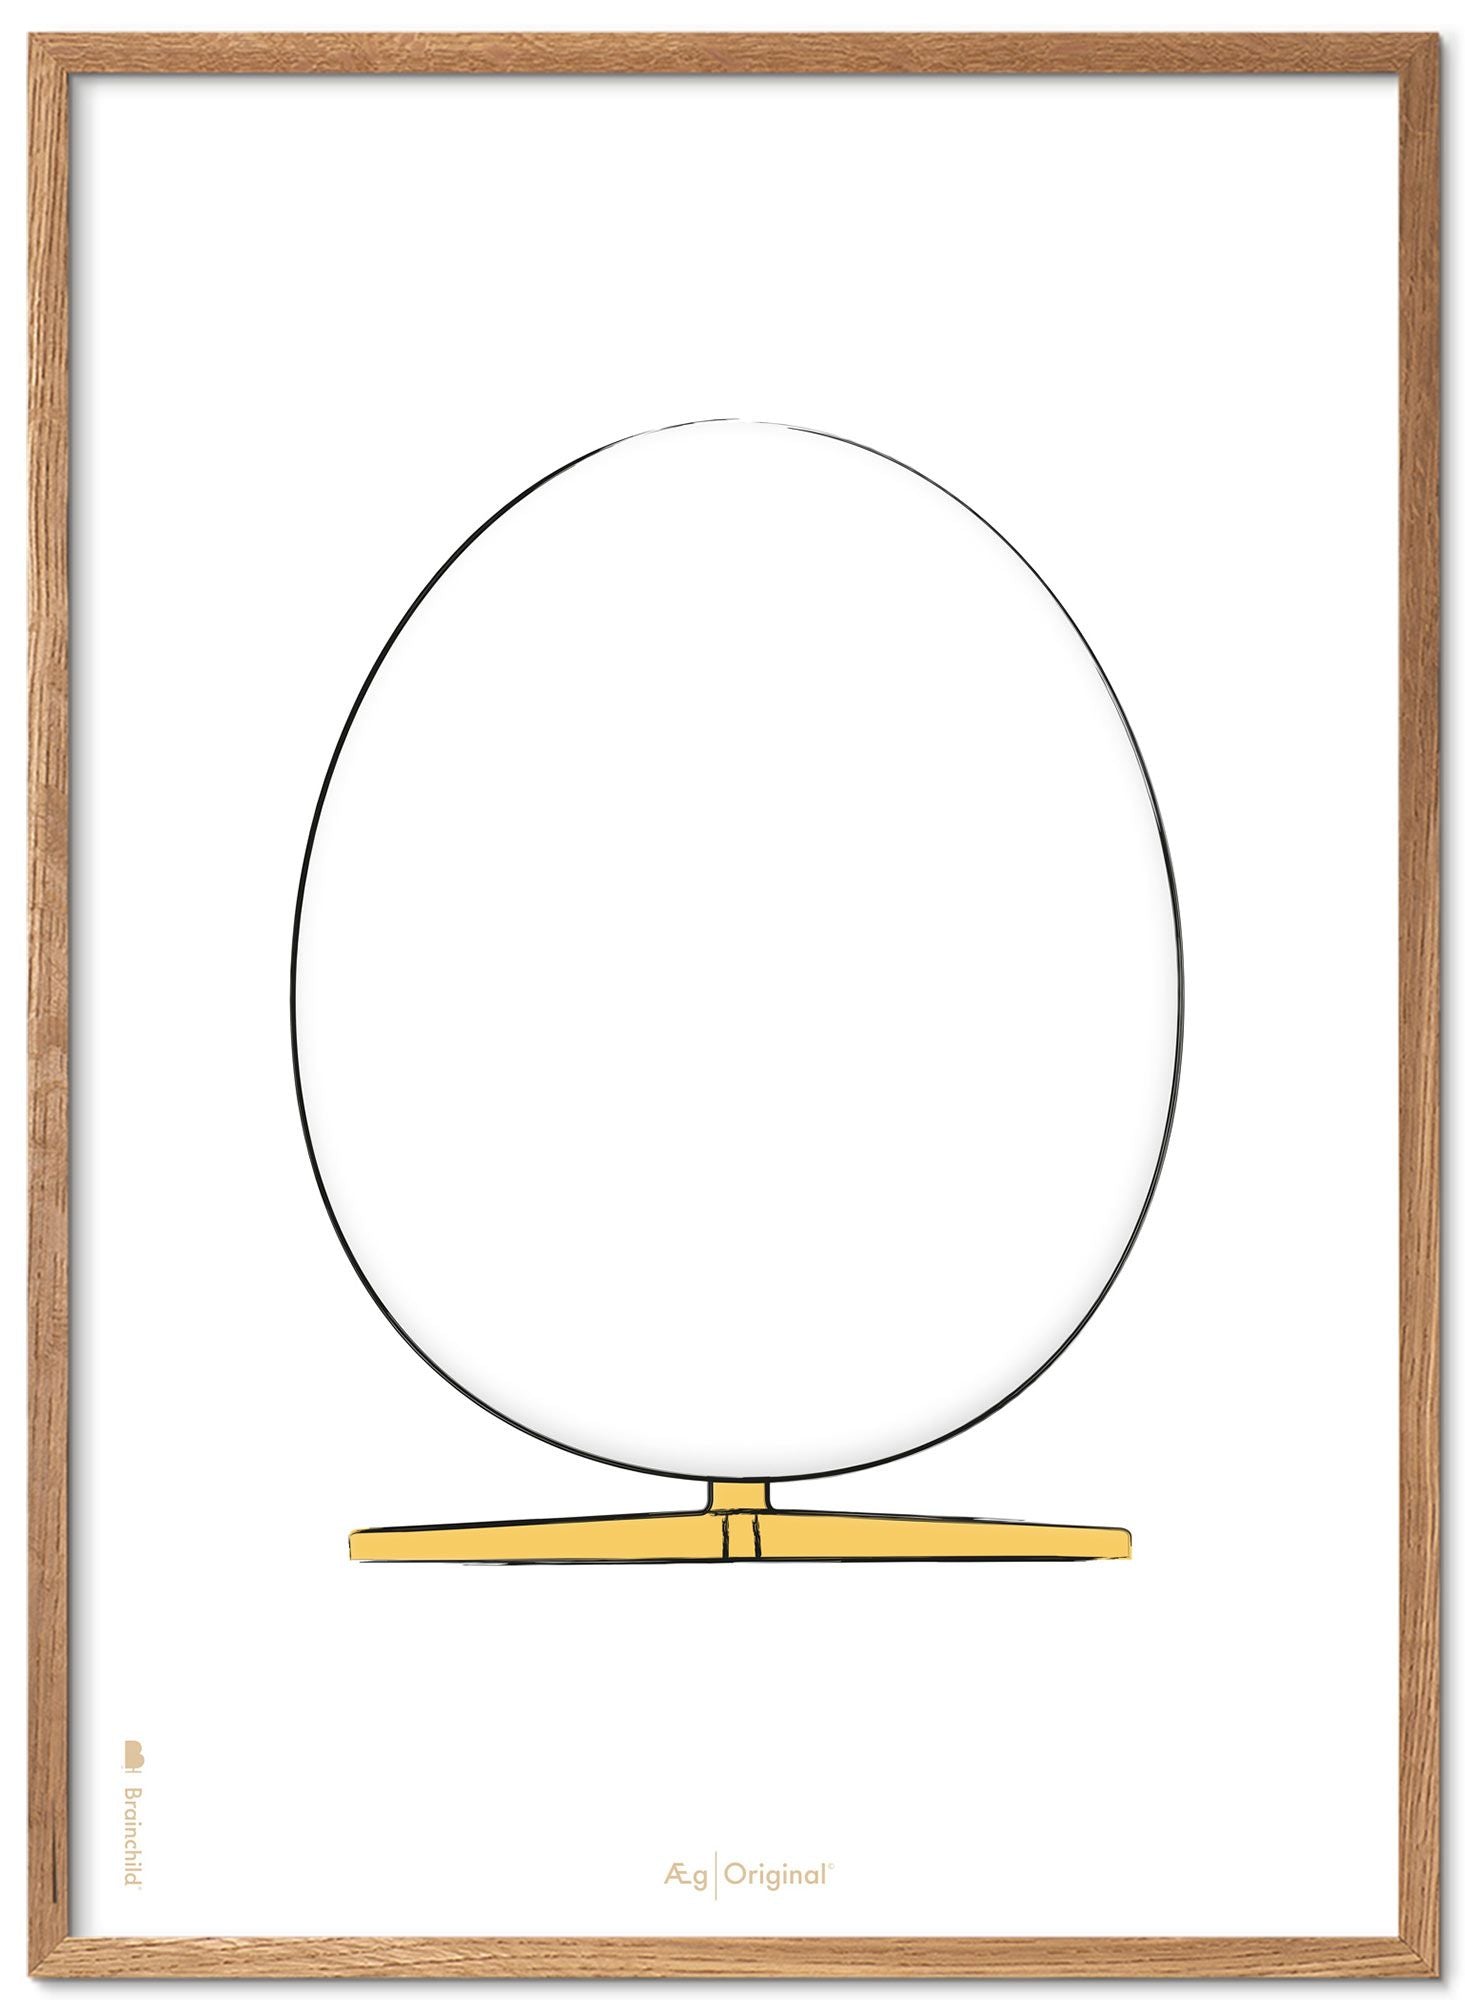 Prepare el marco de póster de boceto de diseño de huevo hecho de madera clara de 30x40 cm, fondo blanco